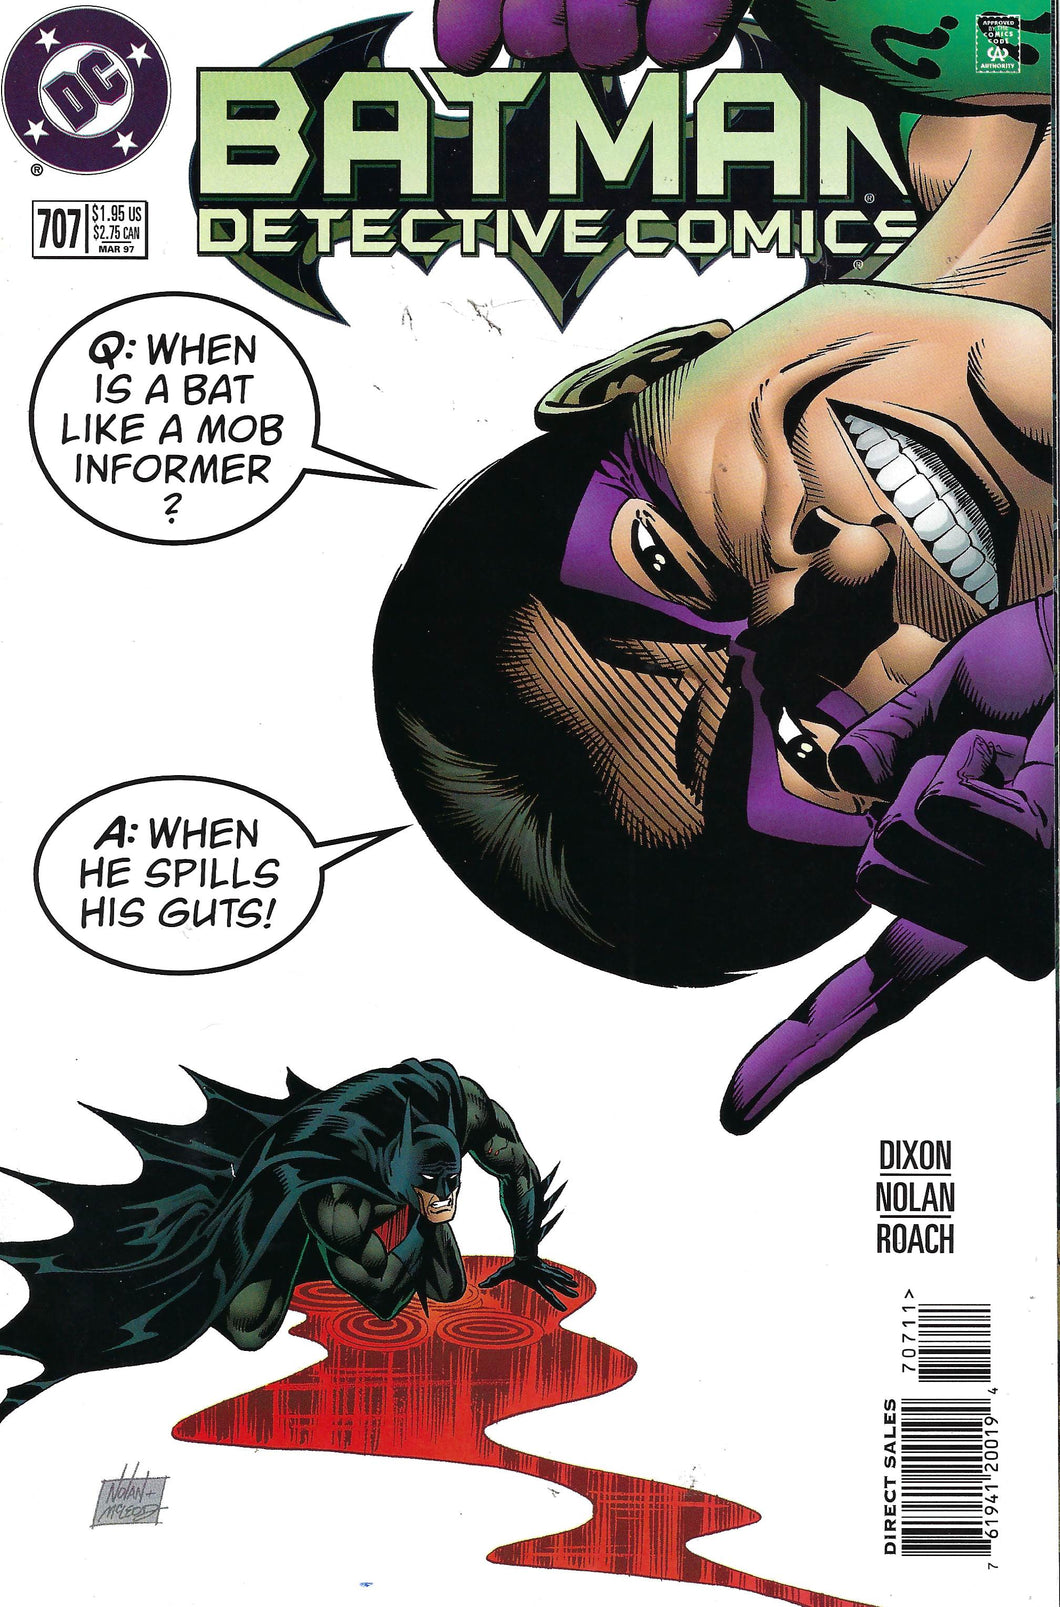 batman Detective Comics #707 (1997)